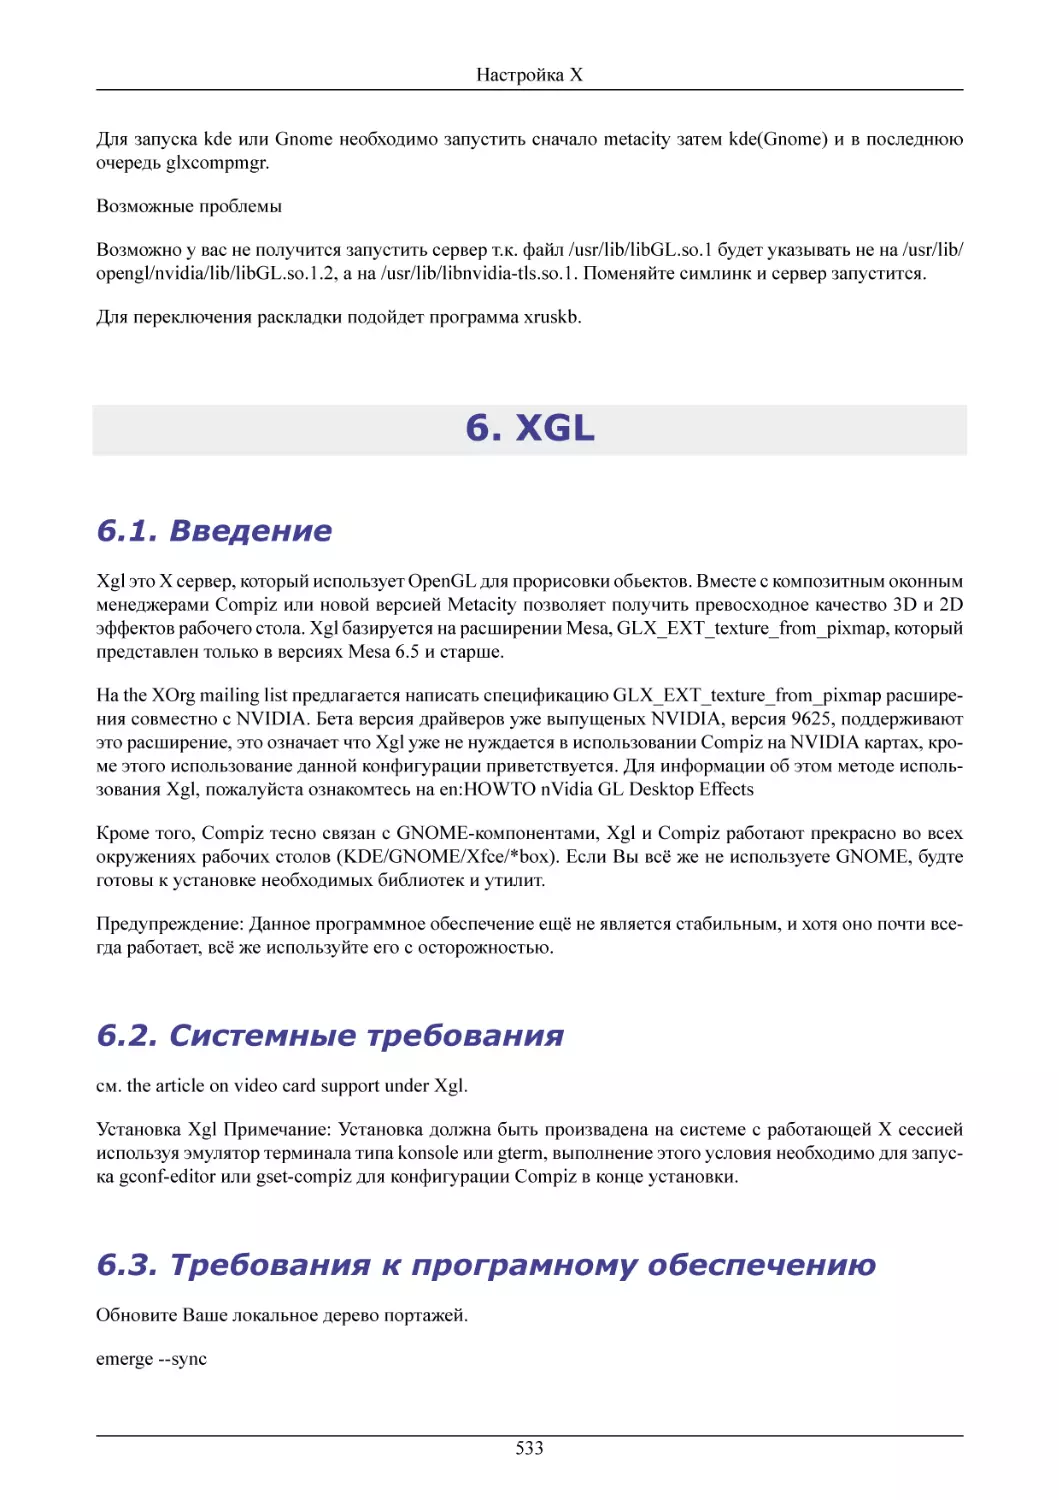 XGL
Введение
Системные требования
Требования к програмному обеспечению